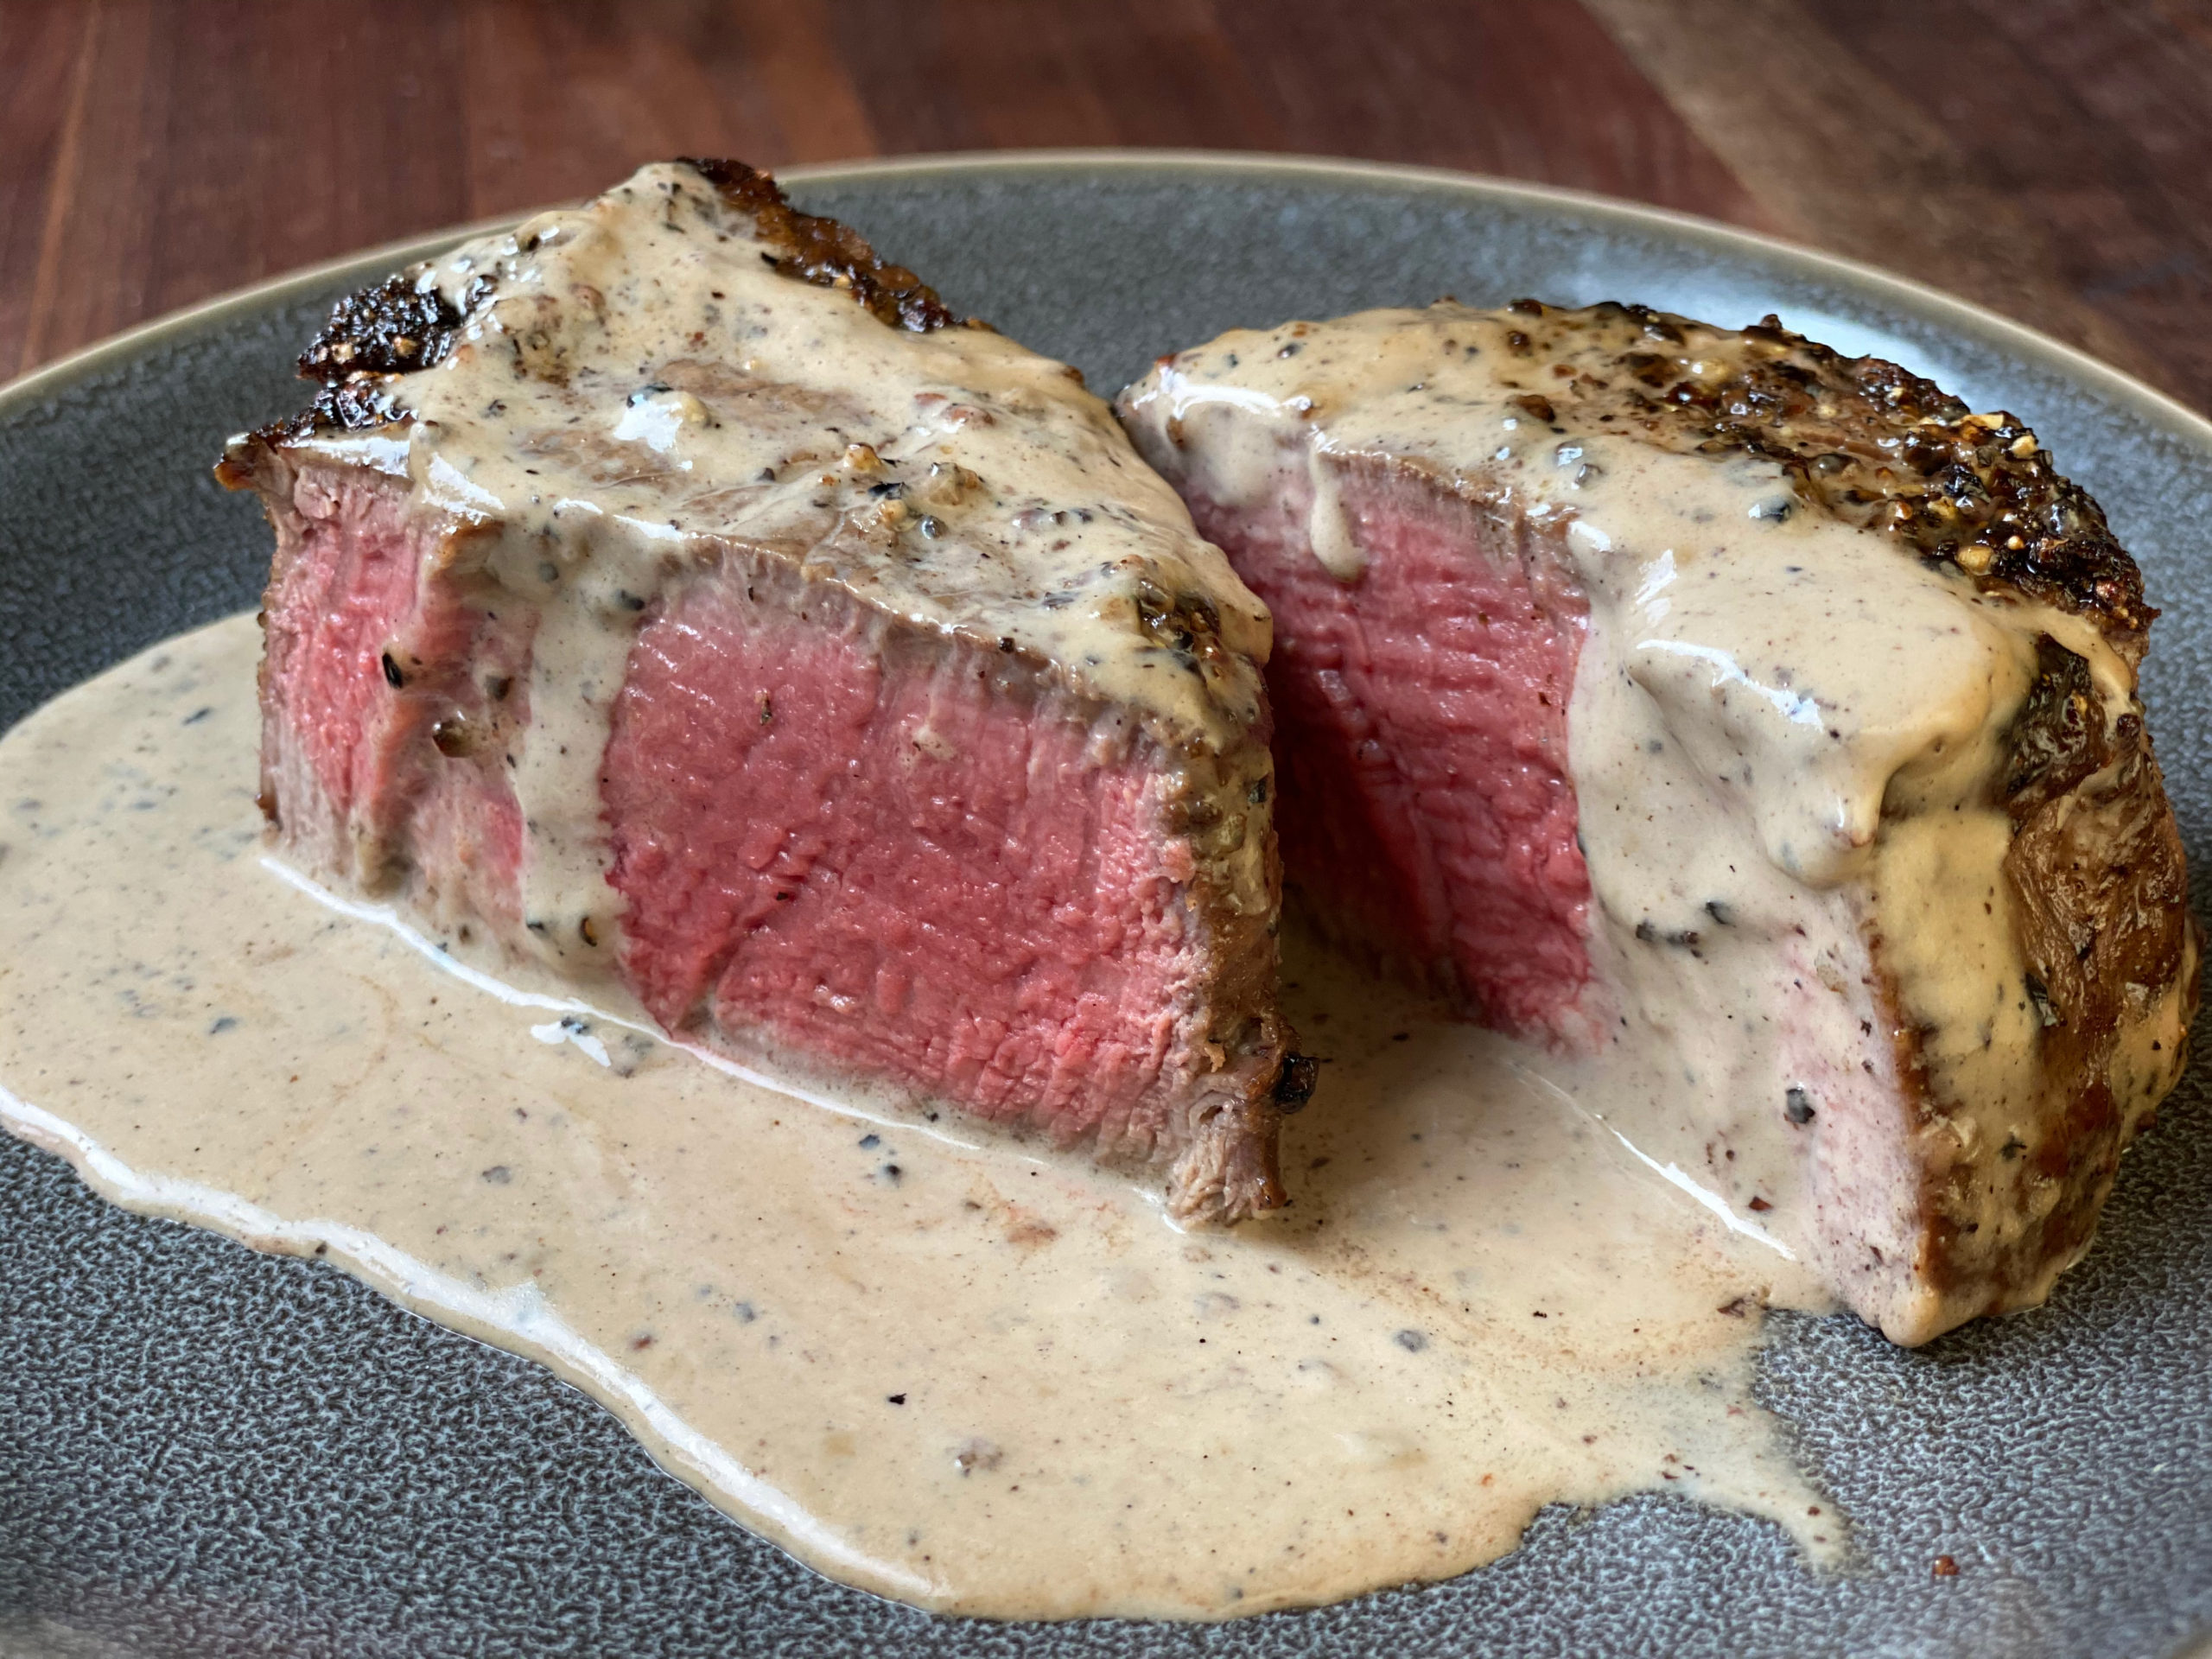 https://altonbrown.com/wp-content/uploads/2020/08/Steak-Au-Poivre-scaled.jpeg